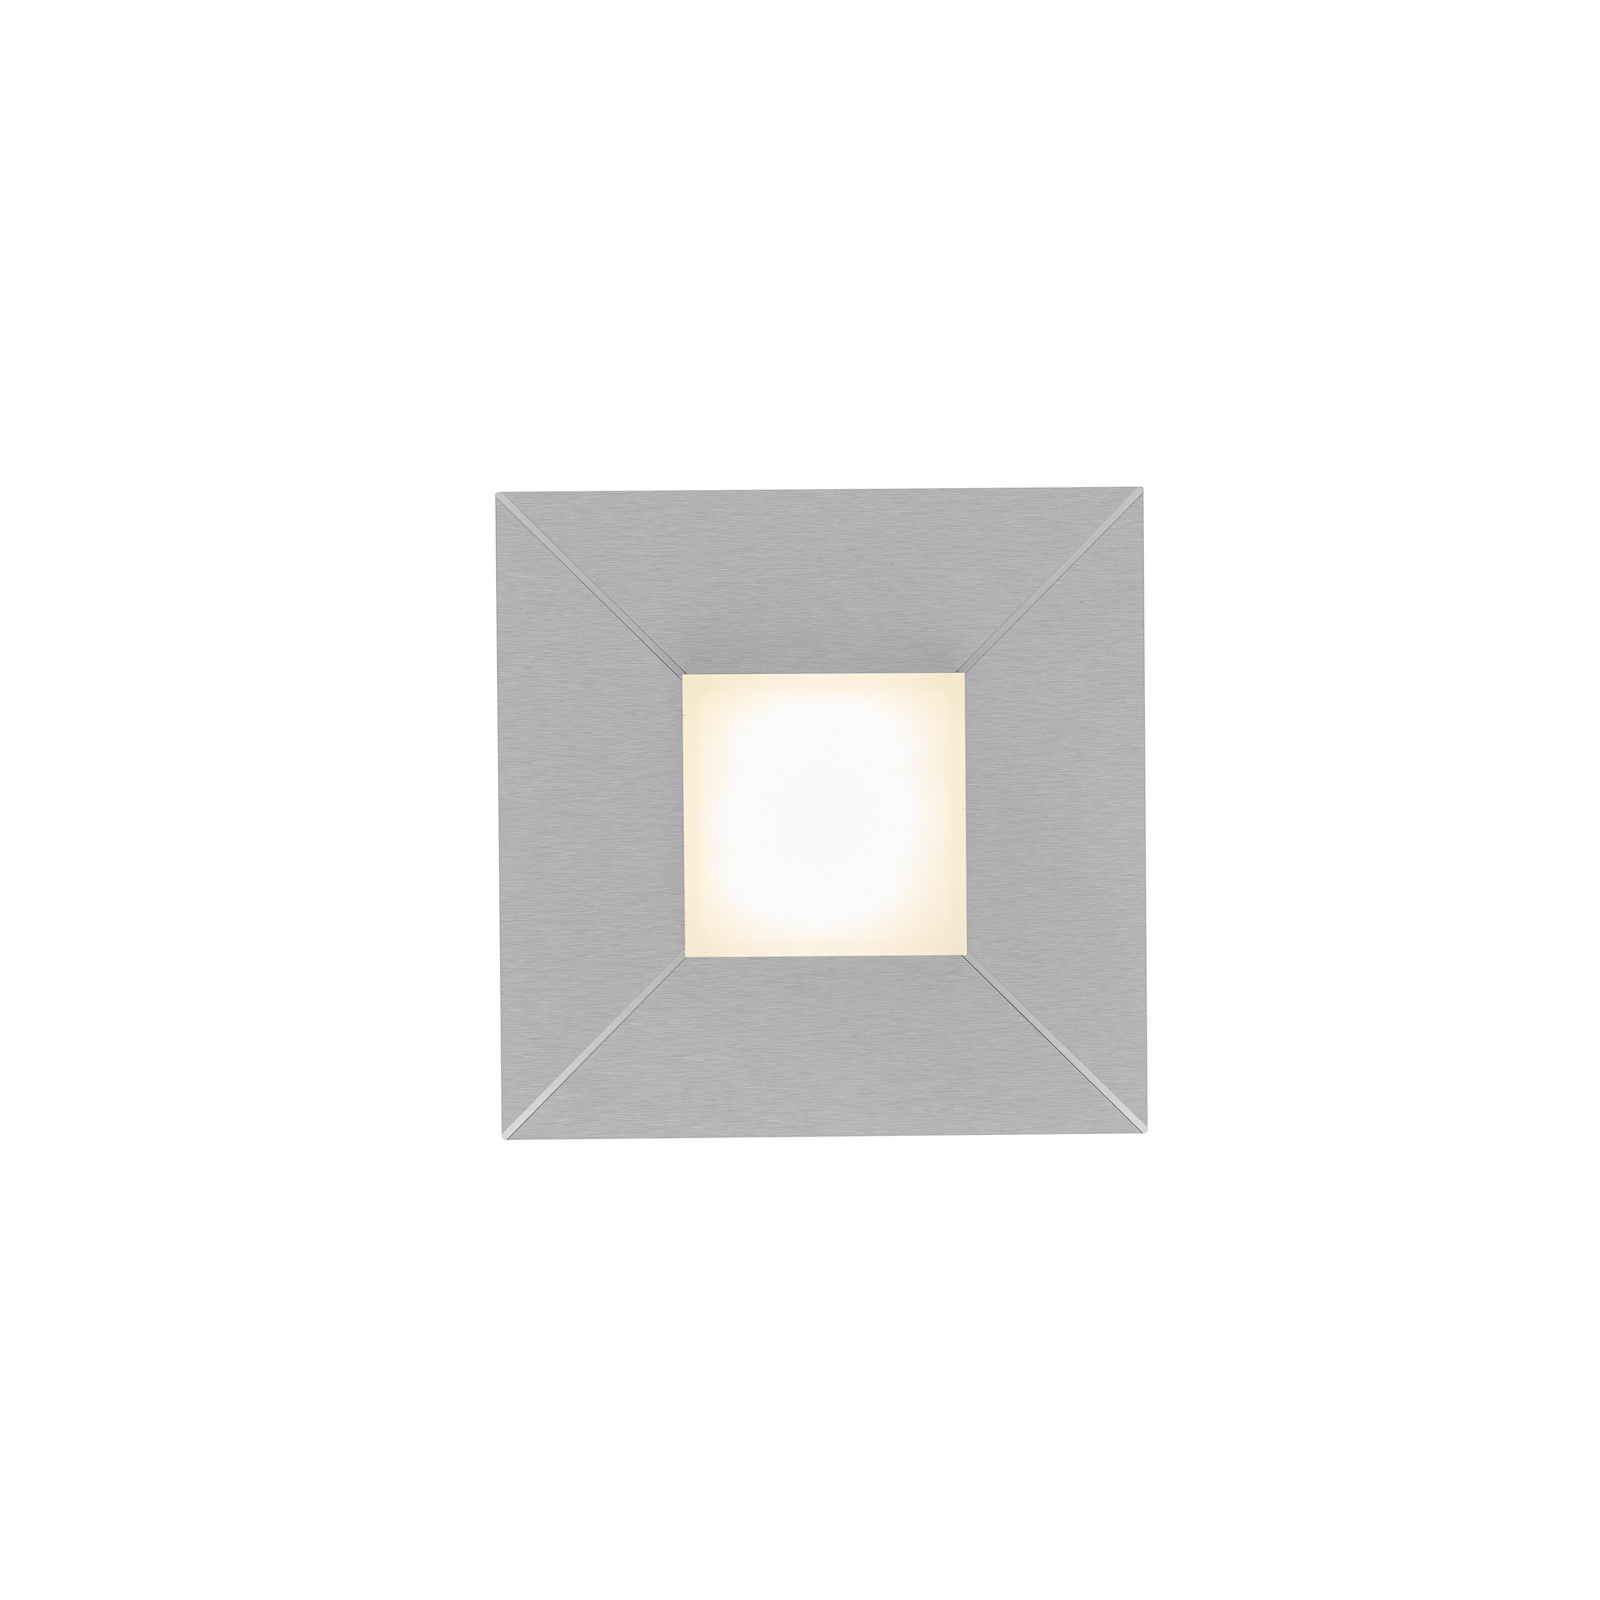 BANKAMP Diamond taklampe 17x17 cm, sølv